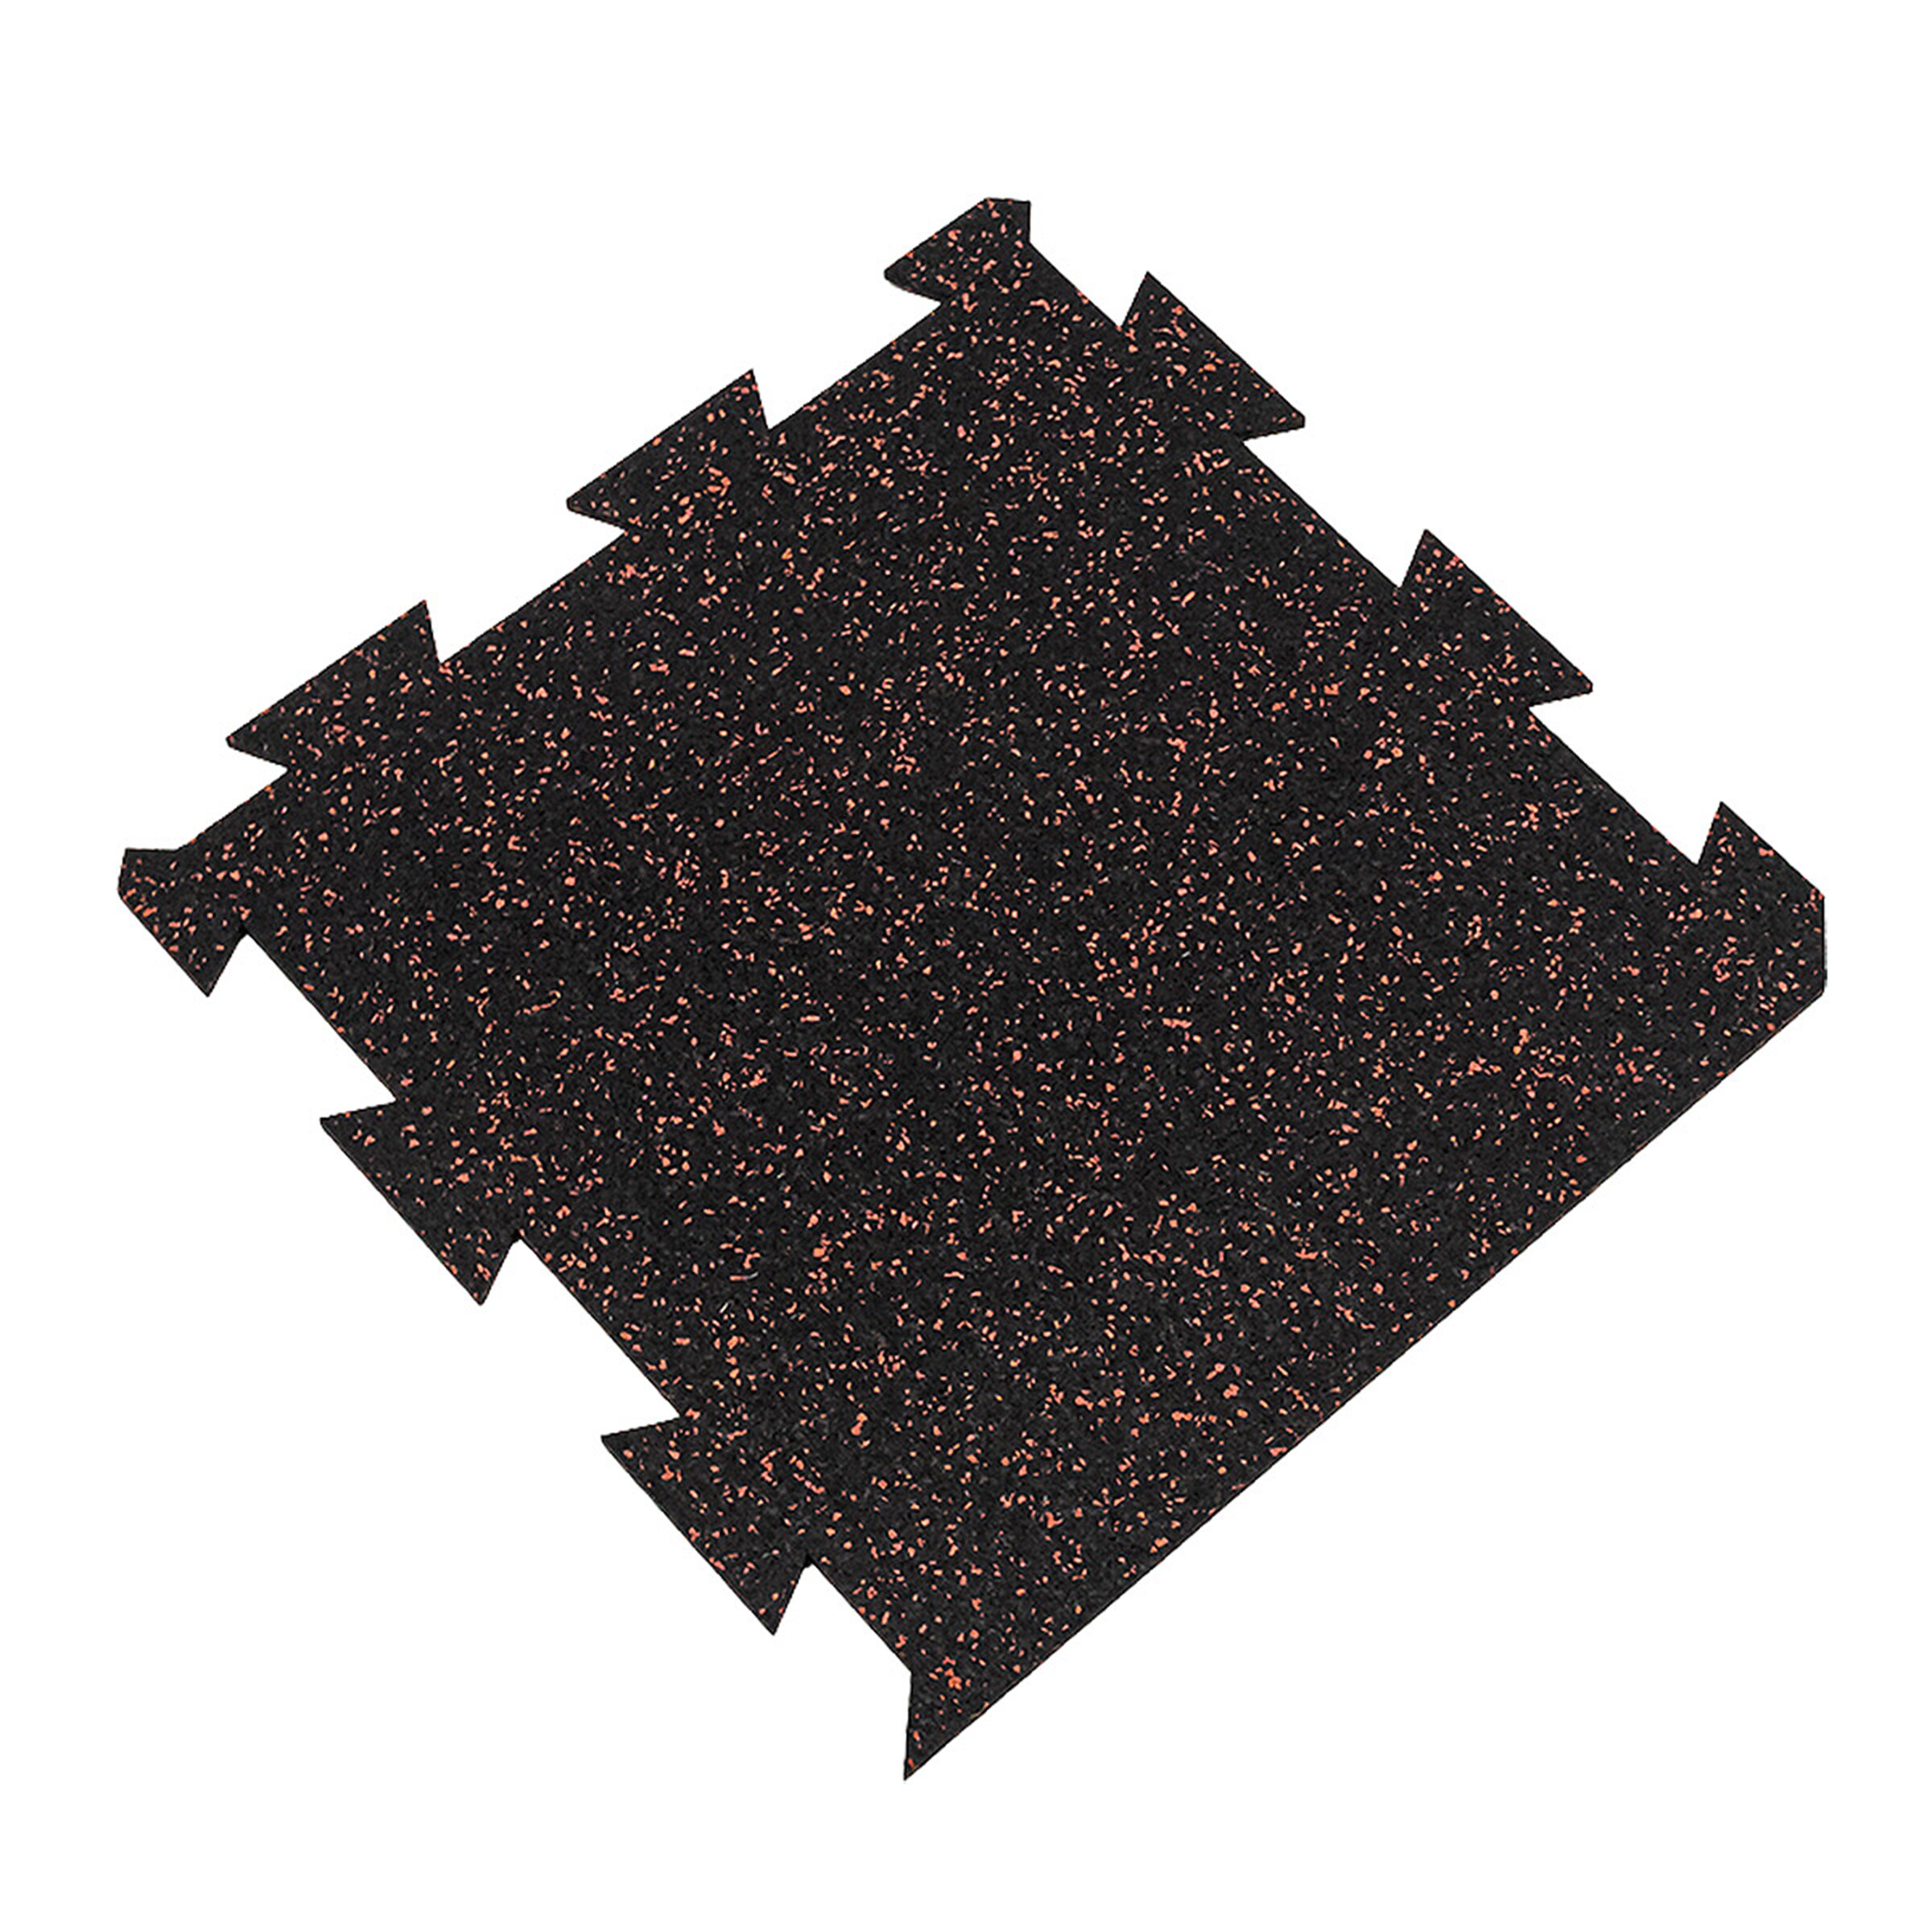 Černo-červená gumová puzzle modulová dlaždice (okraj) FLOMA SF1050 FitFlo - délka 50 cm, šířka 50 cm, výška 1,6 cm